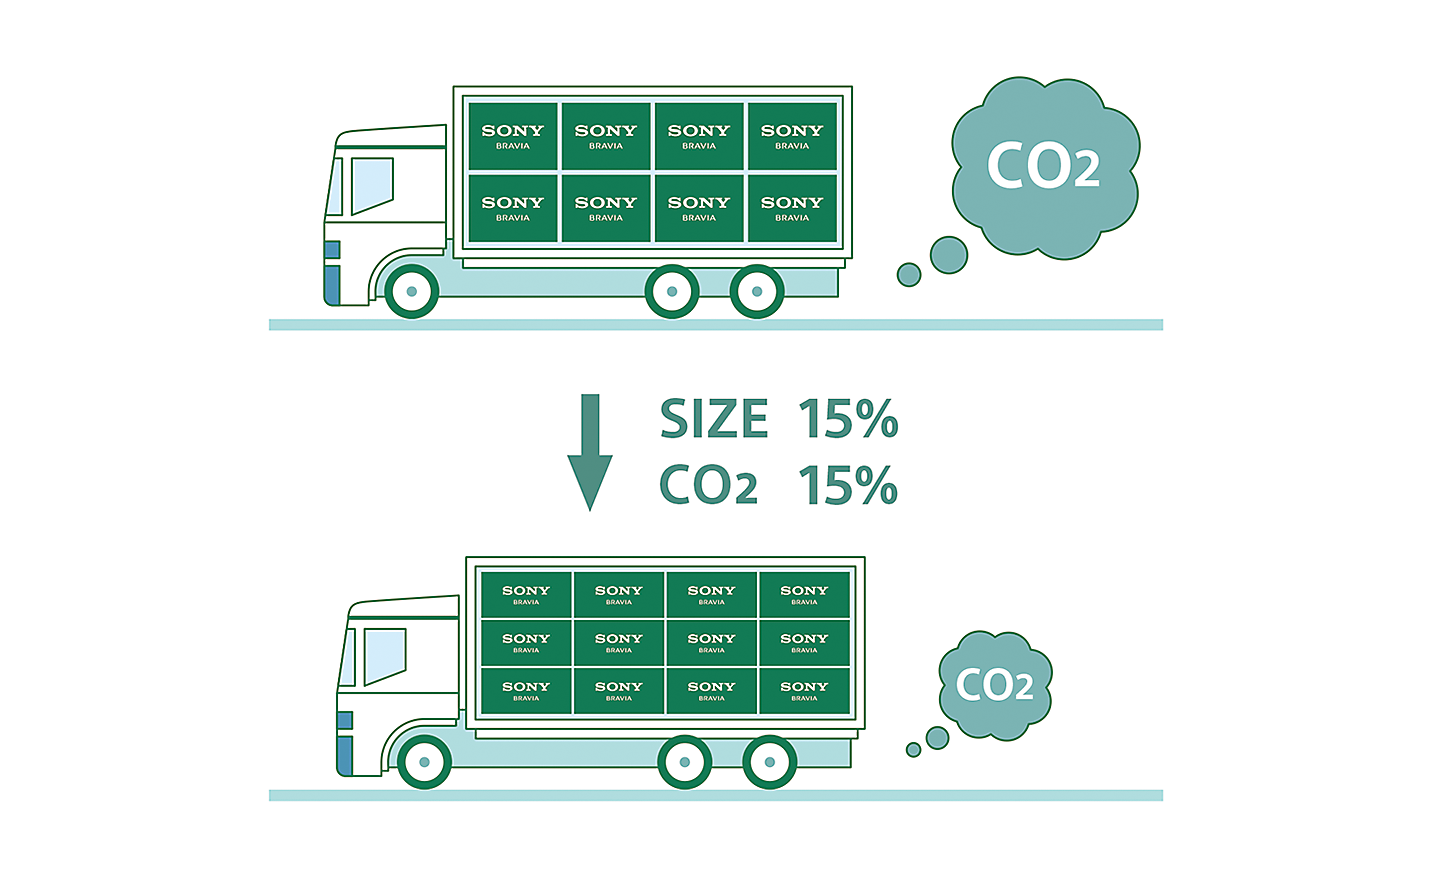 رسم لشاحنتين يوضح كيف يساعد تقليل التعبئة والتغليف في خفض انبعاثات ثاني أكسيد الكربون أثناء النقل